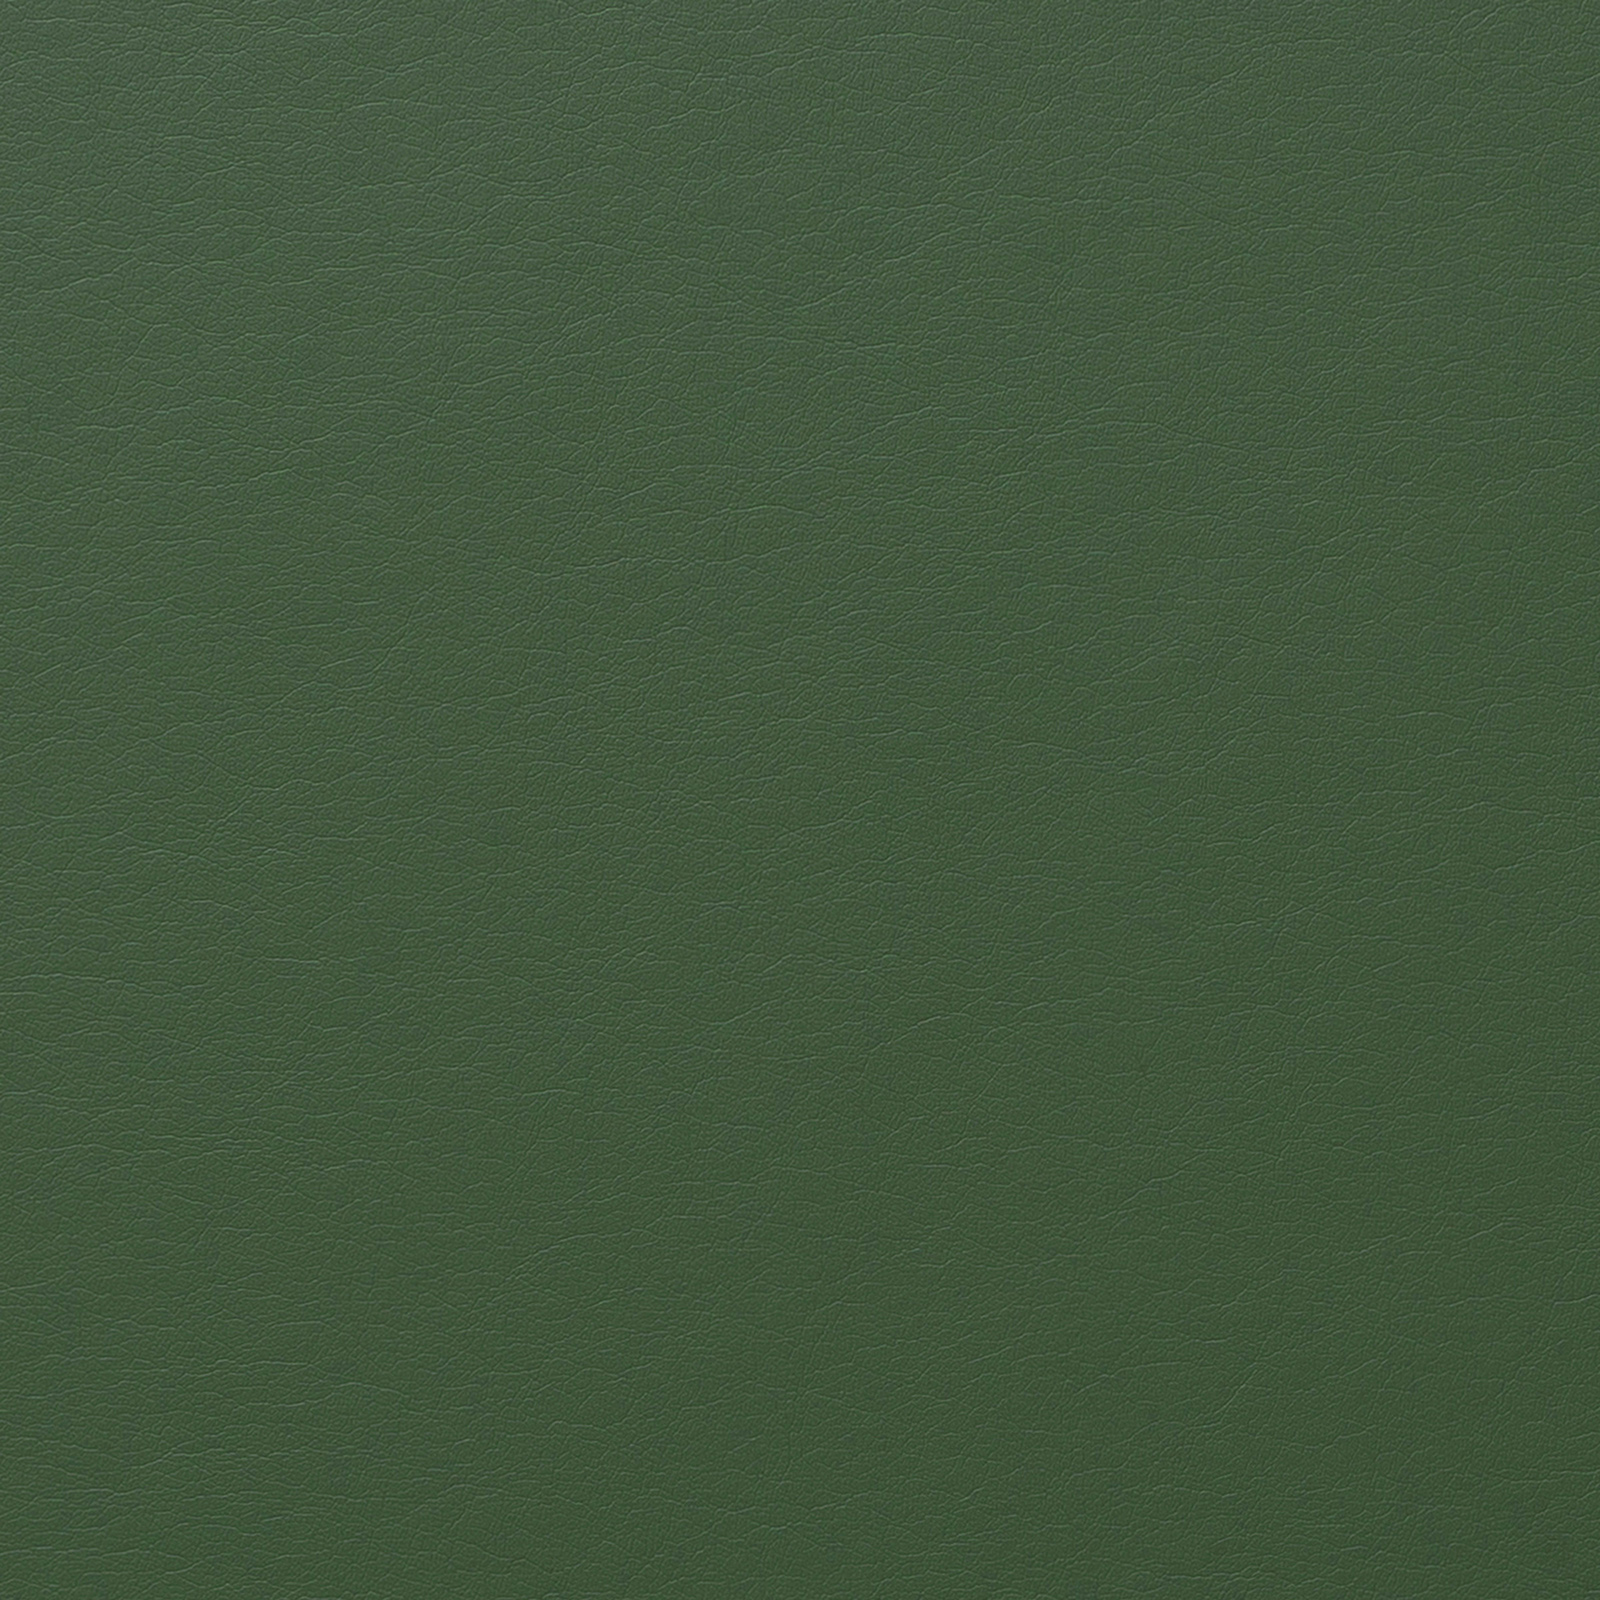 ABR 8703 - KELLY GREEN